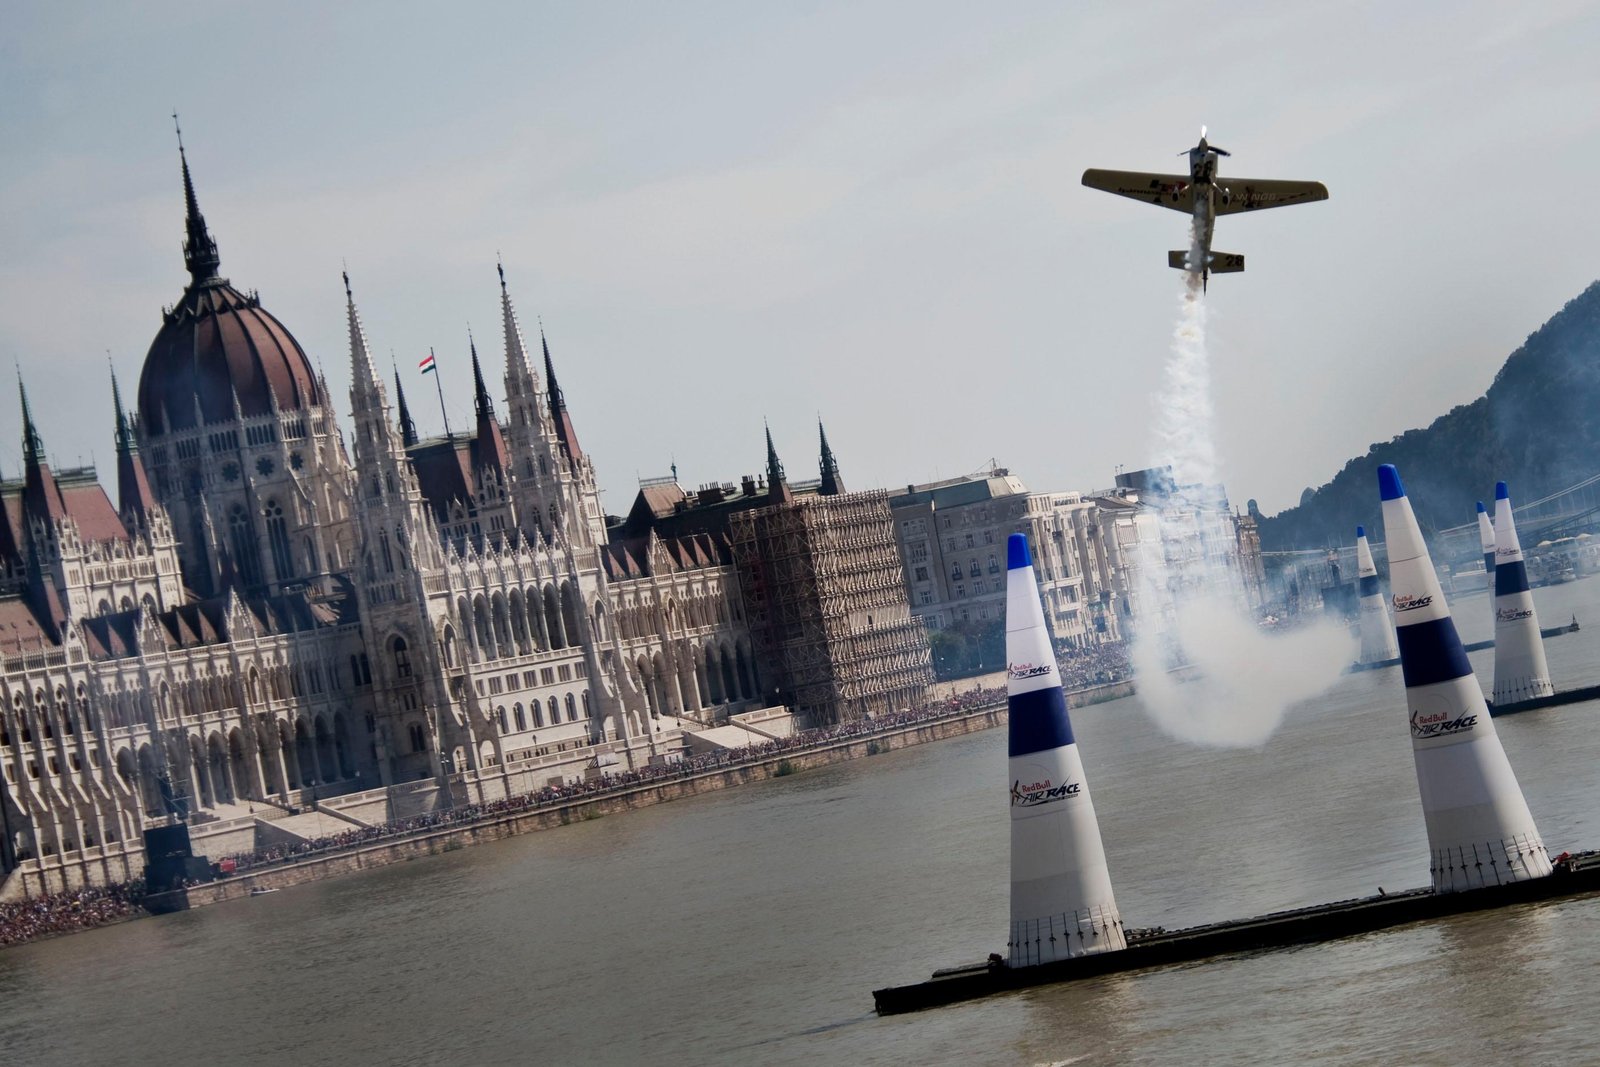 LMP Slams Budapest Council & Gov't Over “Noisy” Red Bull Air Race